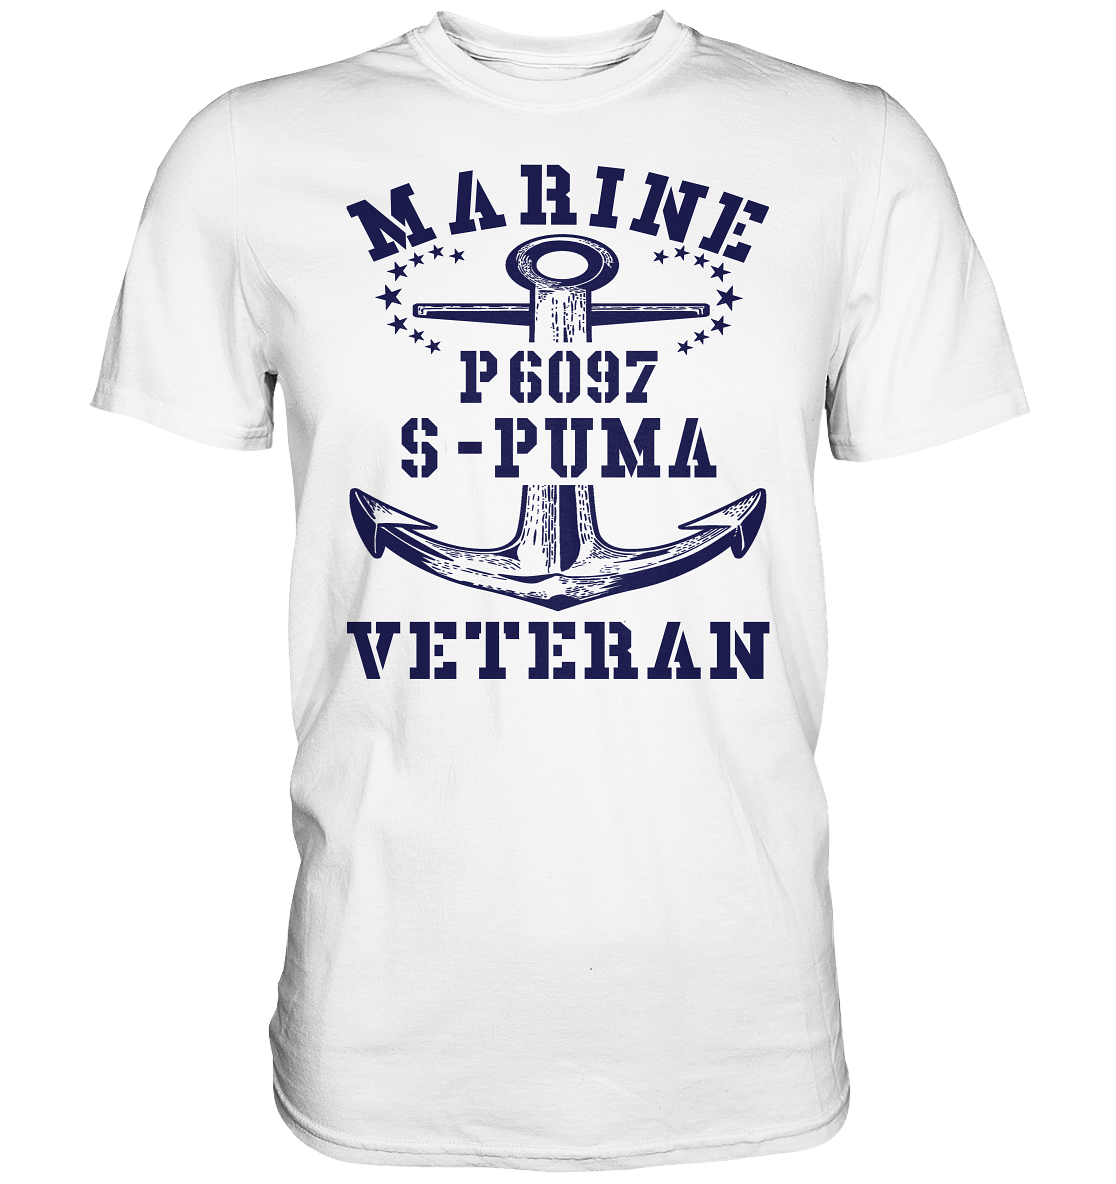 P6097 S-PUMA Marine Veteran - Premium Shirt